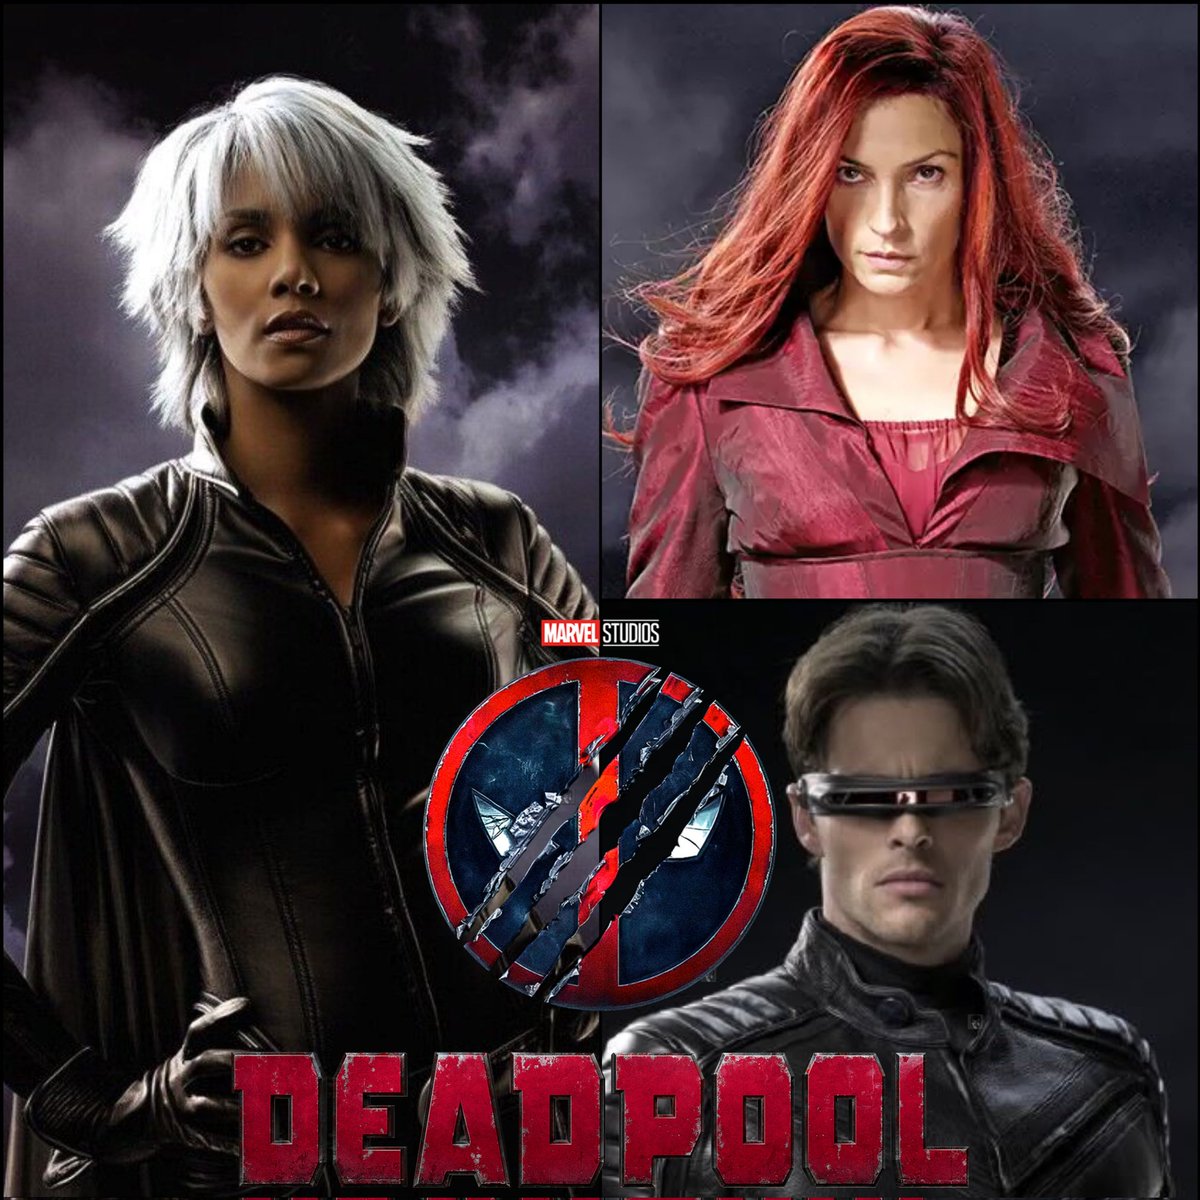 BOMBAZO 💣💥
Se reporta qué #HalleBerry, #FamkeJanssen y #JamesMarsden volverán a interpretar sus papeles como Storm, Jean Grey y Cyclops en #Deadpool3 😱🎬